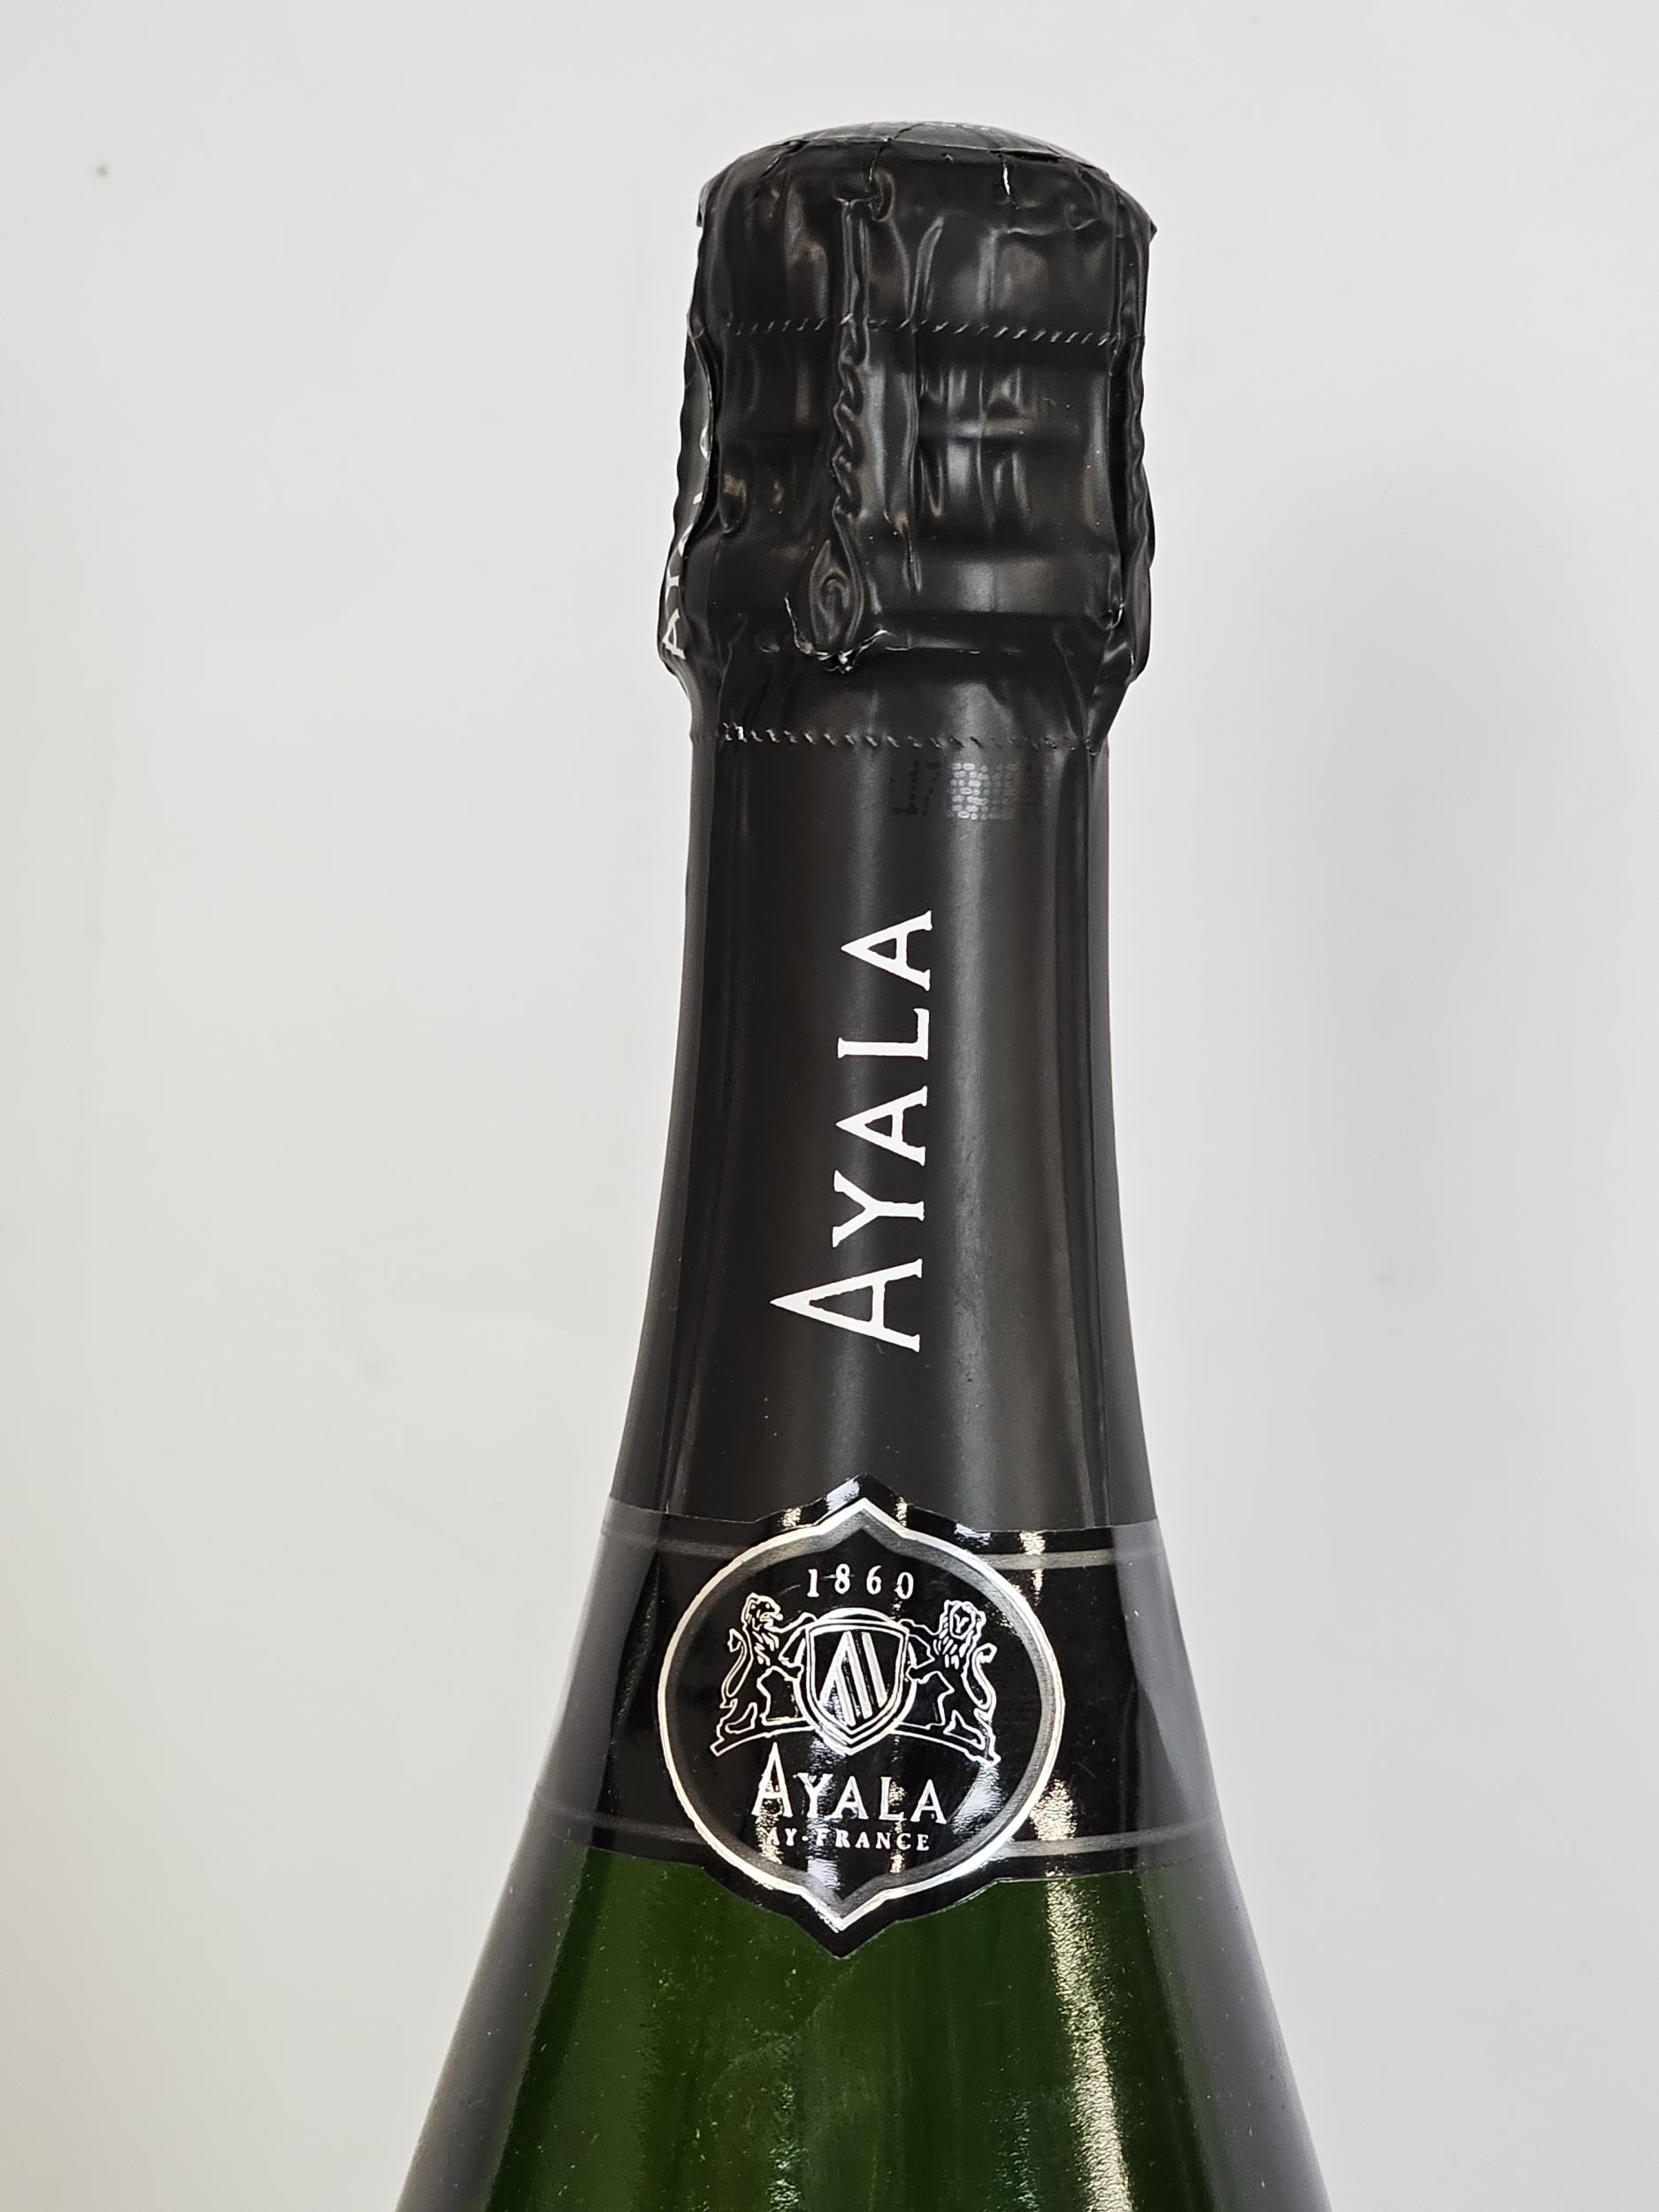 Ayala Brut Majeur Champagne, France. 6 x 75cl bottles - Image 4 of 5